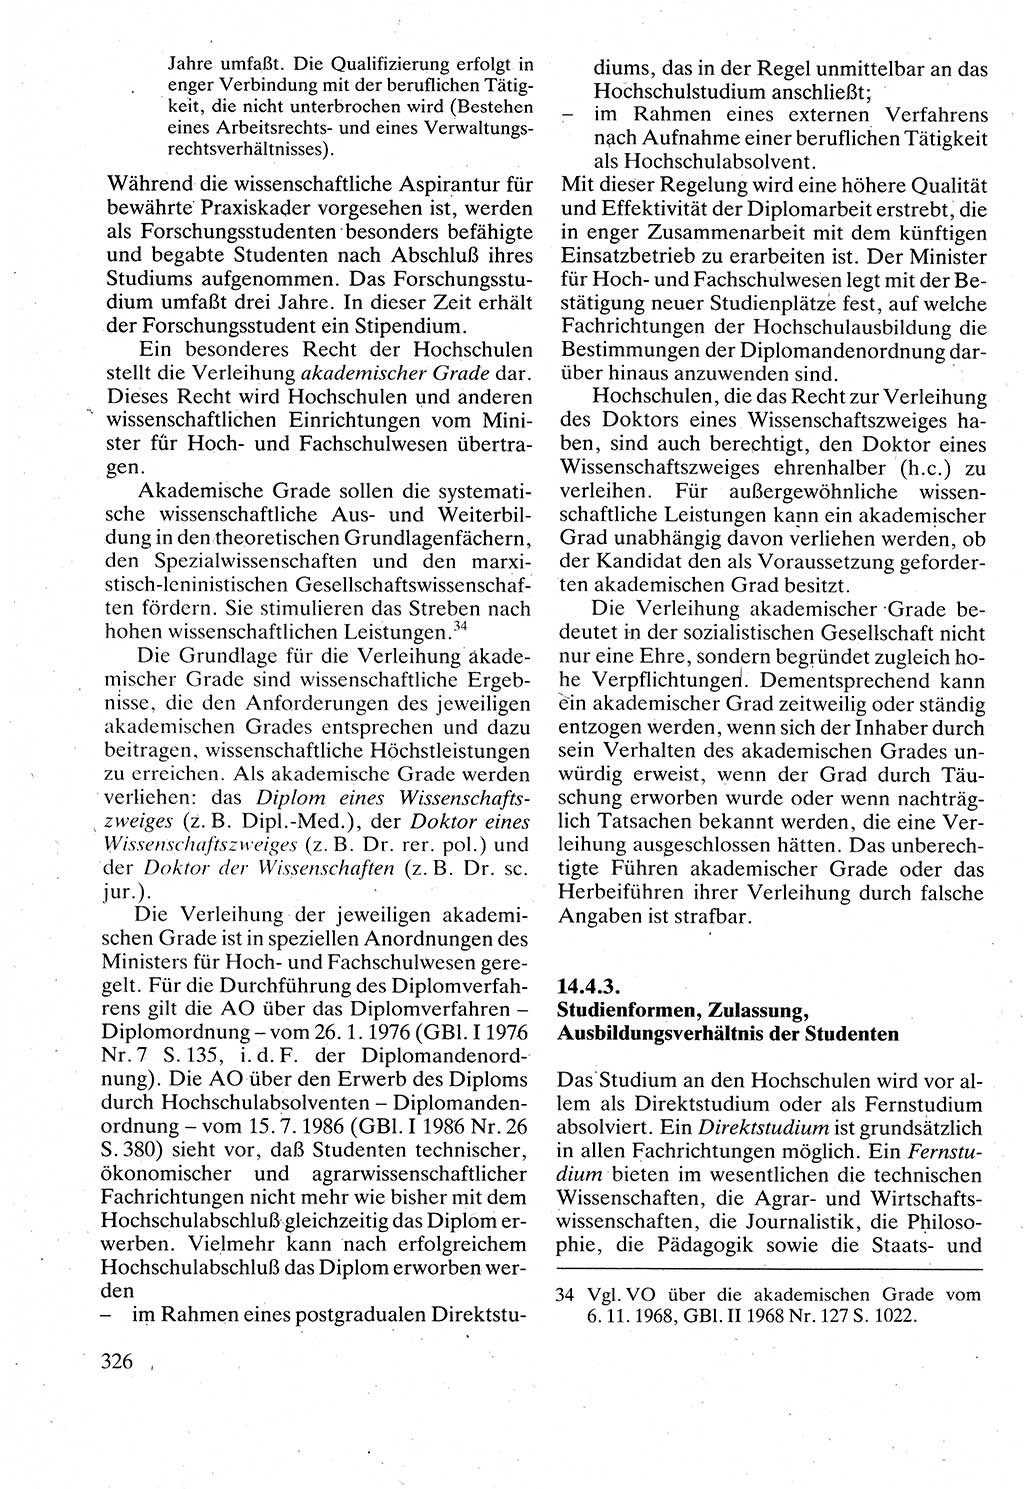 Verwaltungsrecht [Deutsche Demokratische Republik (DDR)], Lehrbuch 1988, Seite 326 (Verw.-R. DDR Lb. 1988, S. 326)